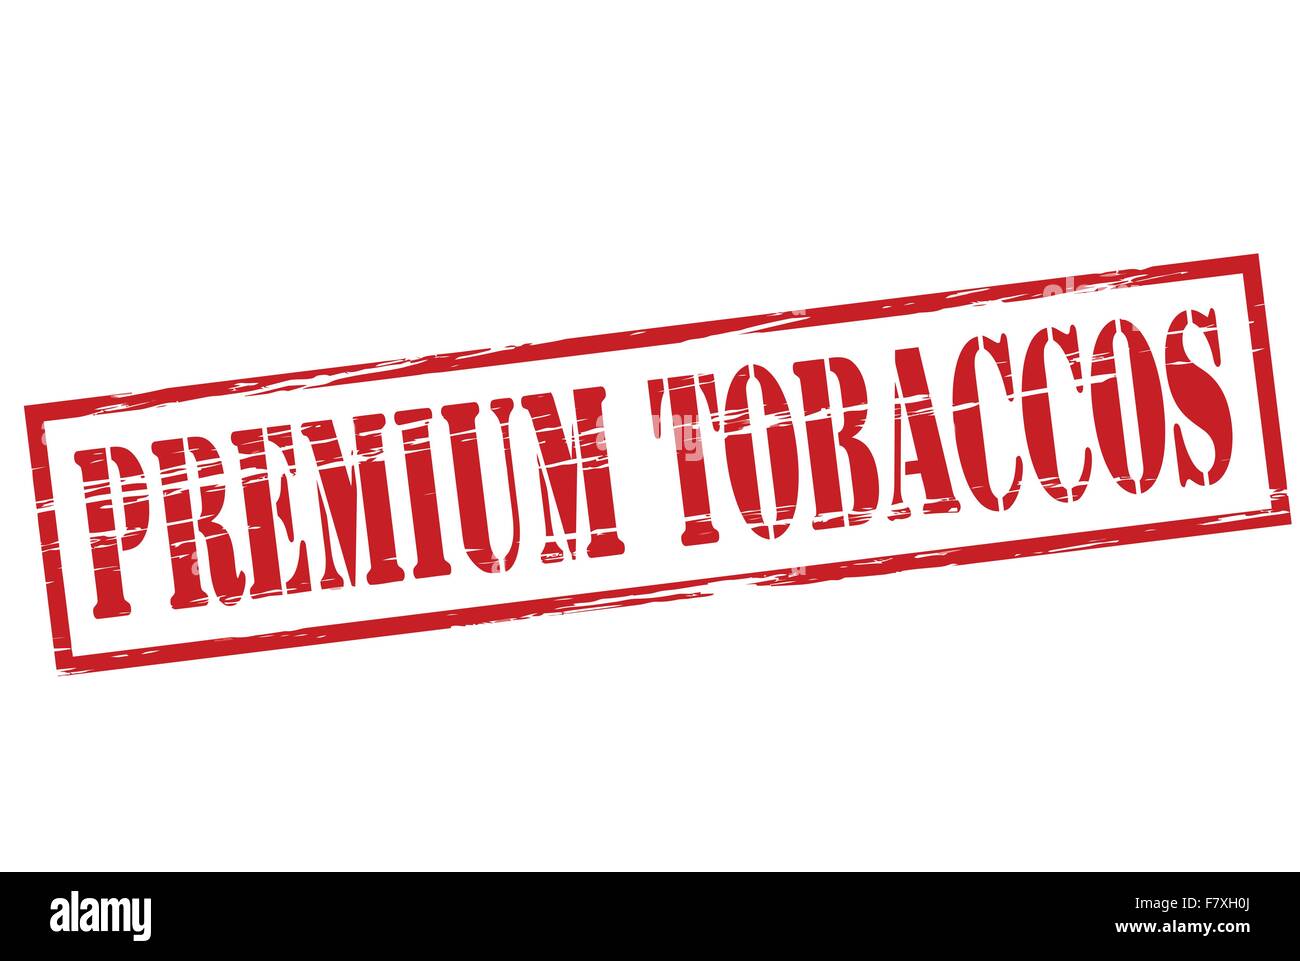 Tabacos Premium Ilustración del Vector